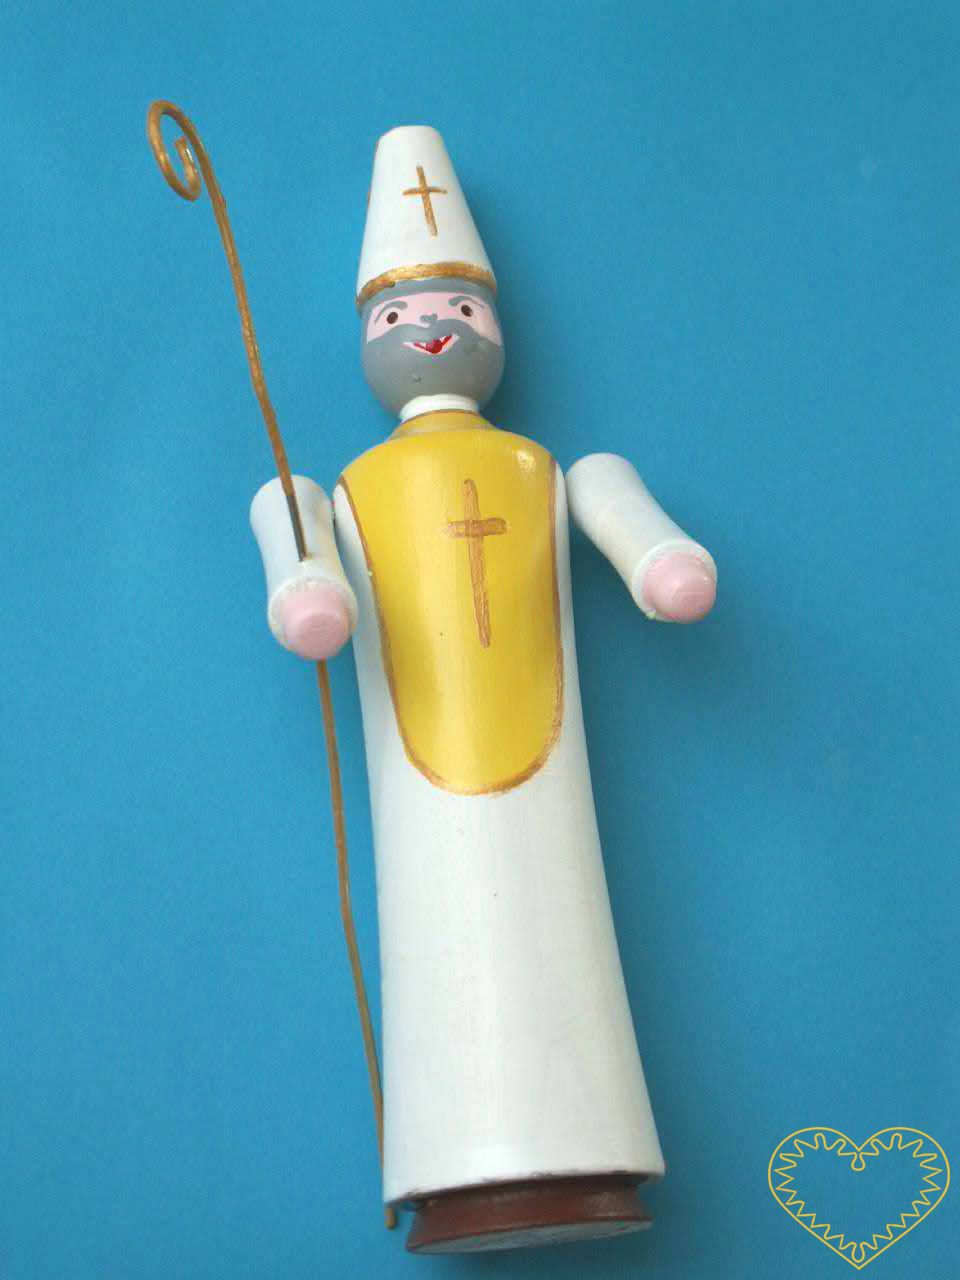 Dřevěný malovaný mikuláš s berlou. Krásně malovaný suvenýr vycházející ze vzorů tradičních dětských dřevěných hraček. Soustružený mikuláš s biskupskou berlou a čepicí má pohyblivé ruce ve směru nahoru - dolu.